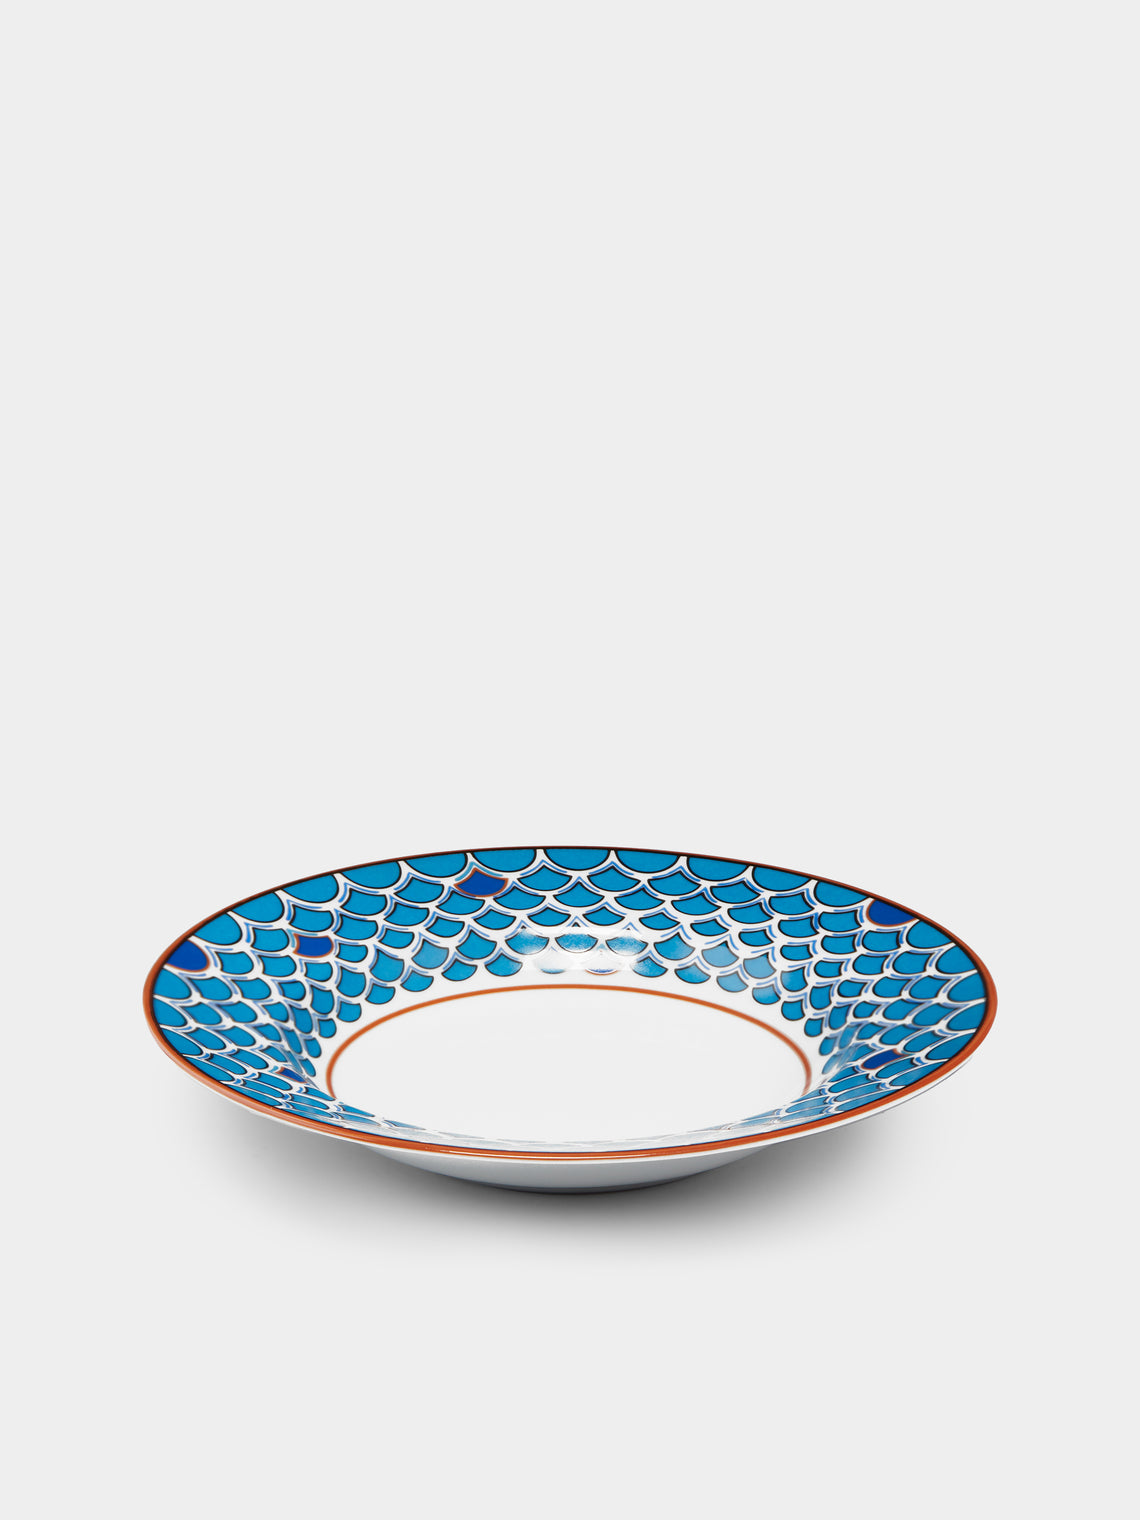 Pinto Paris - Lagon Porcelain Soup Plate -  - ABASK - 